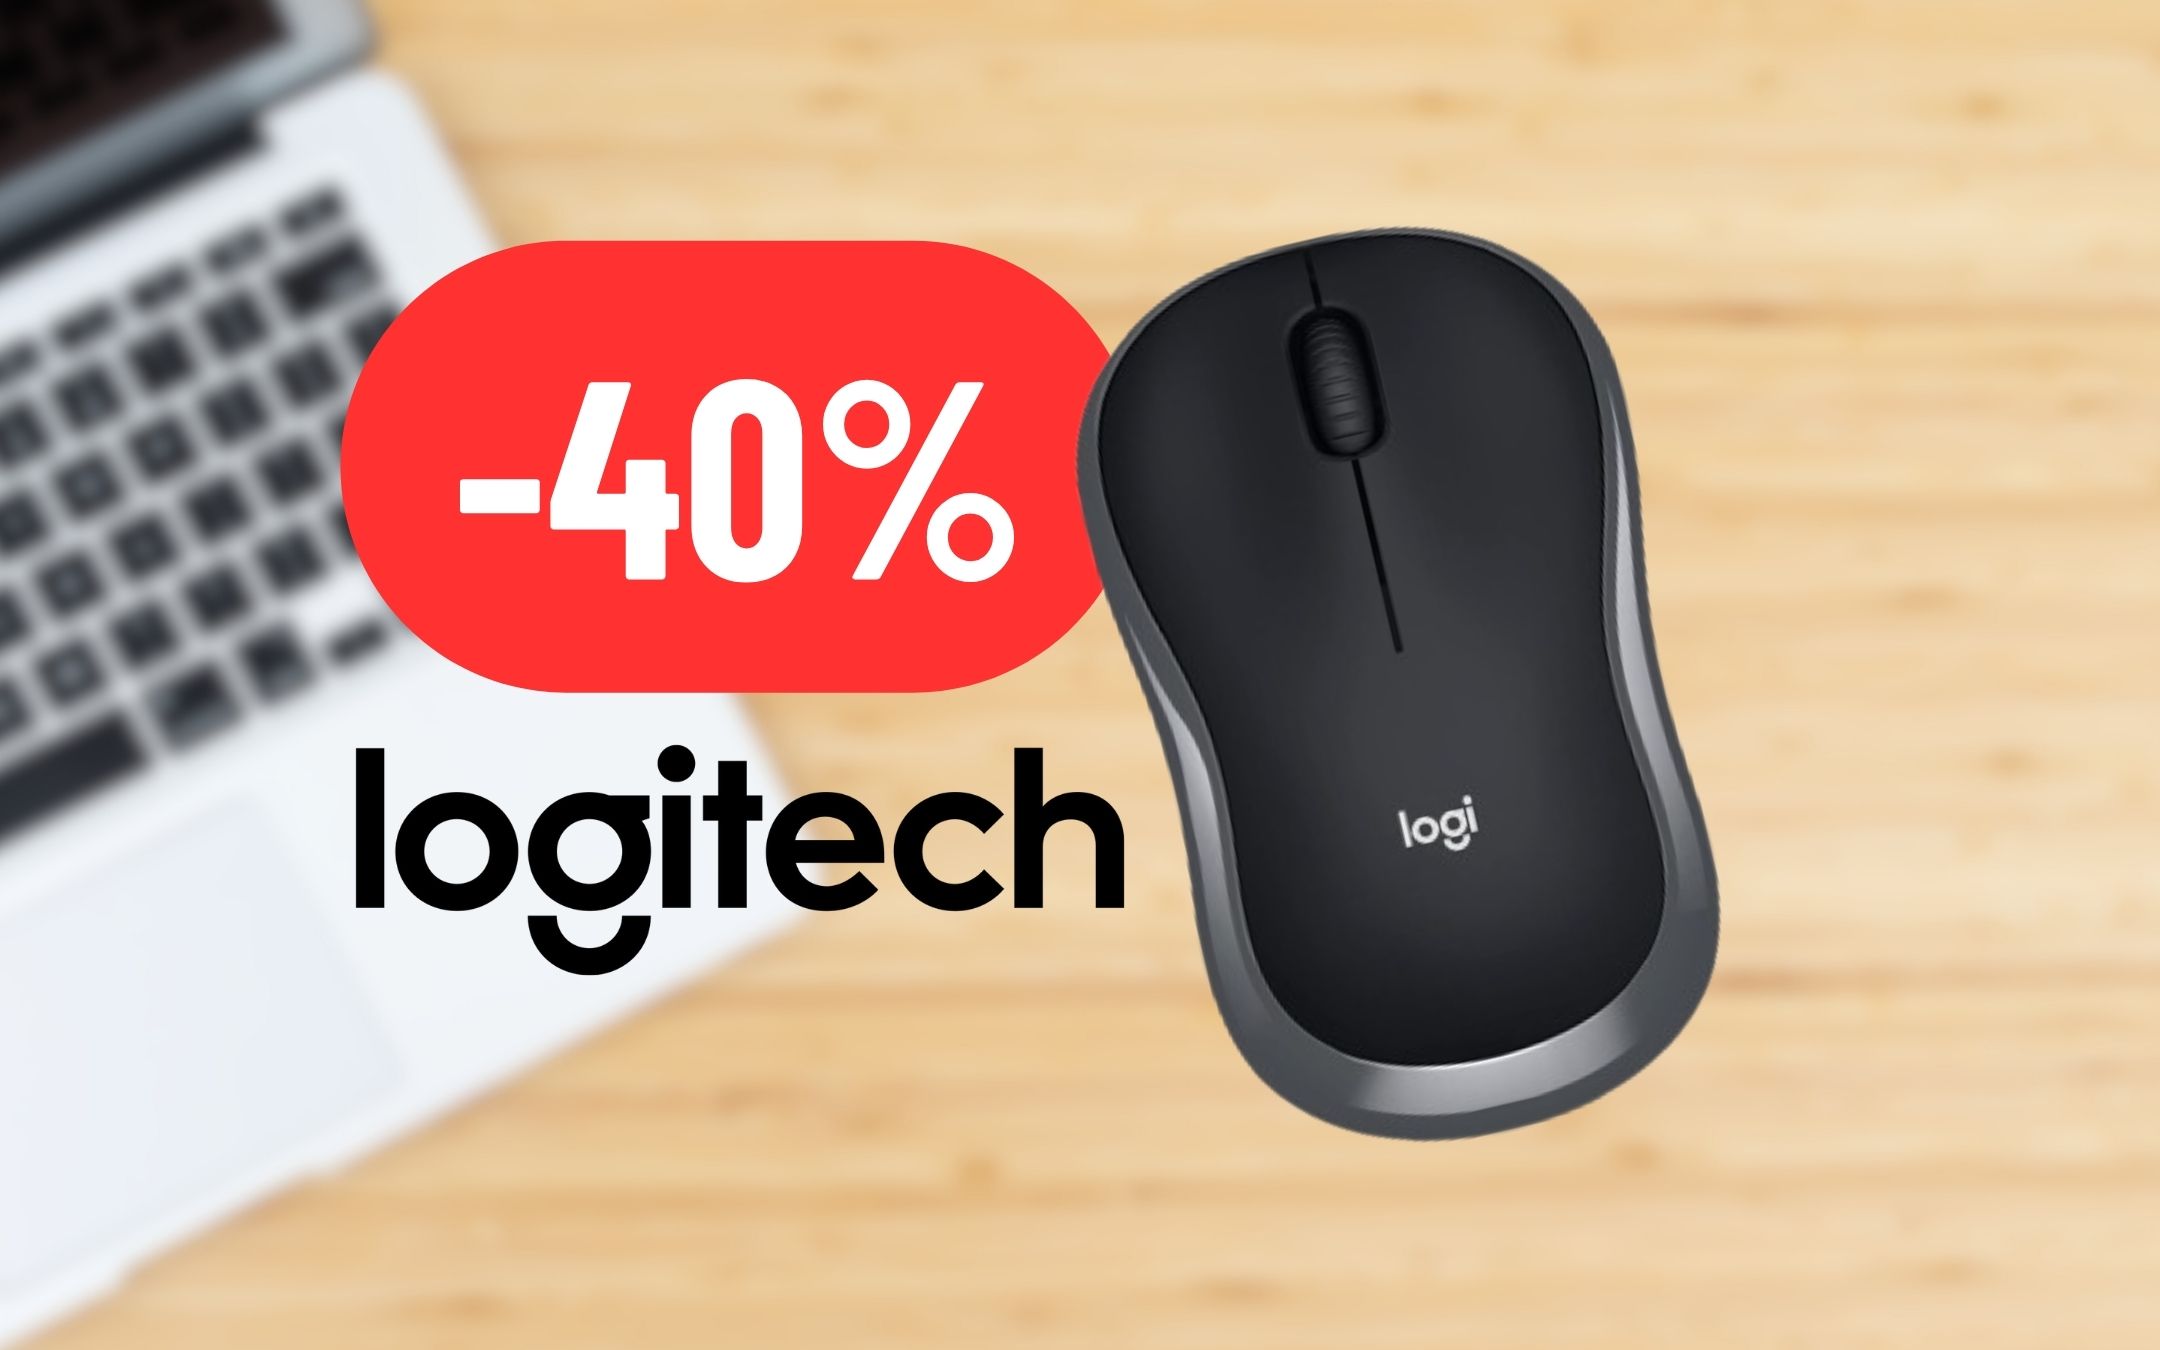 Mouse Logitech in formato mini perfetto per l'ufficio al 40% DI SCONTO